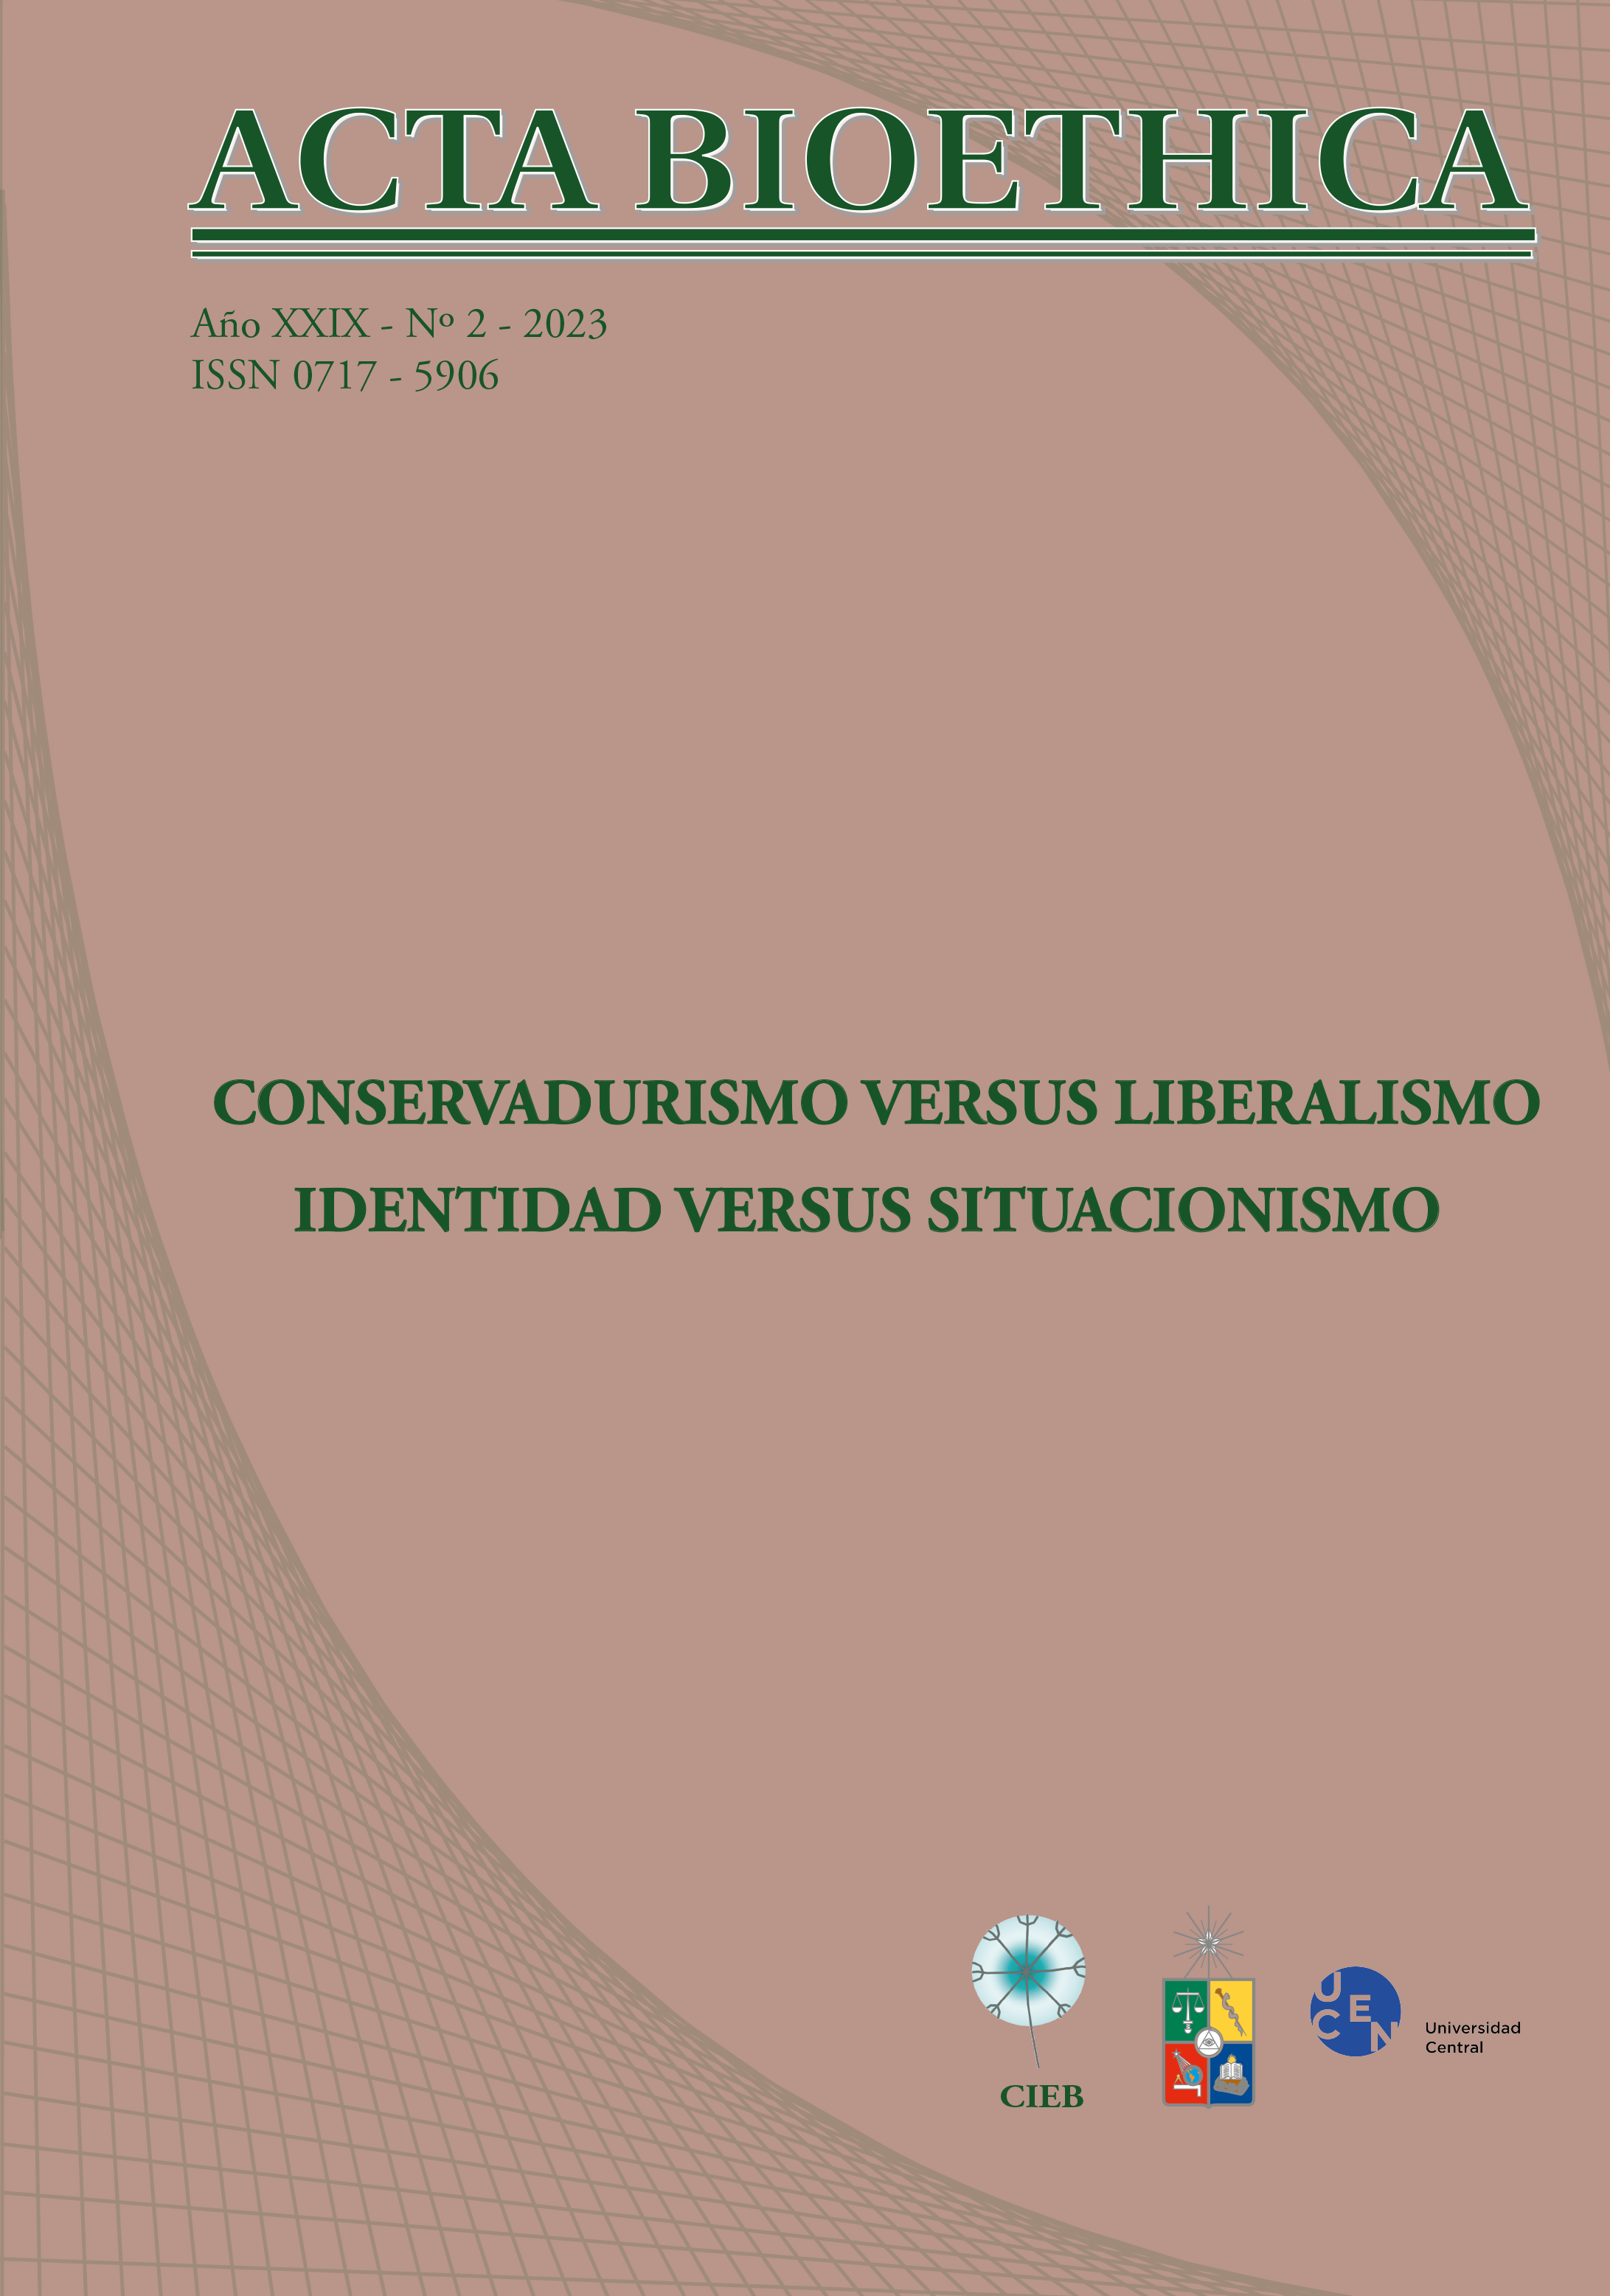 							Ver Vol. 29 Núm. 2 (2023): CONSERVADURISMO VERSUS LIBERALISMO. IDENTIDAD VERSUS SITUACIONISMO
						